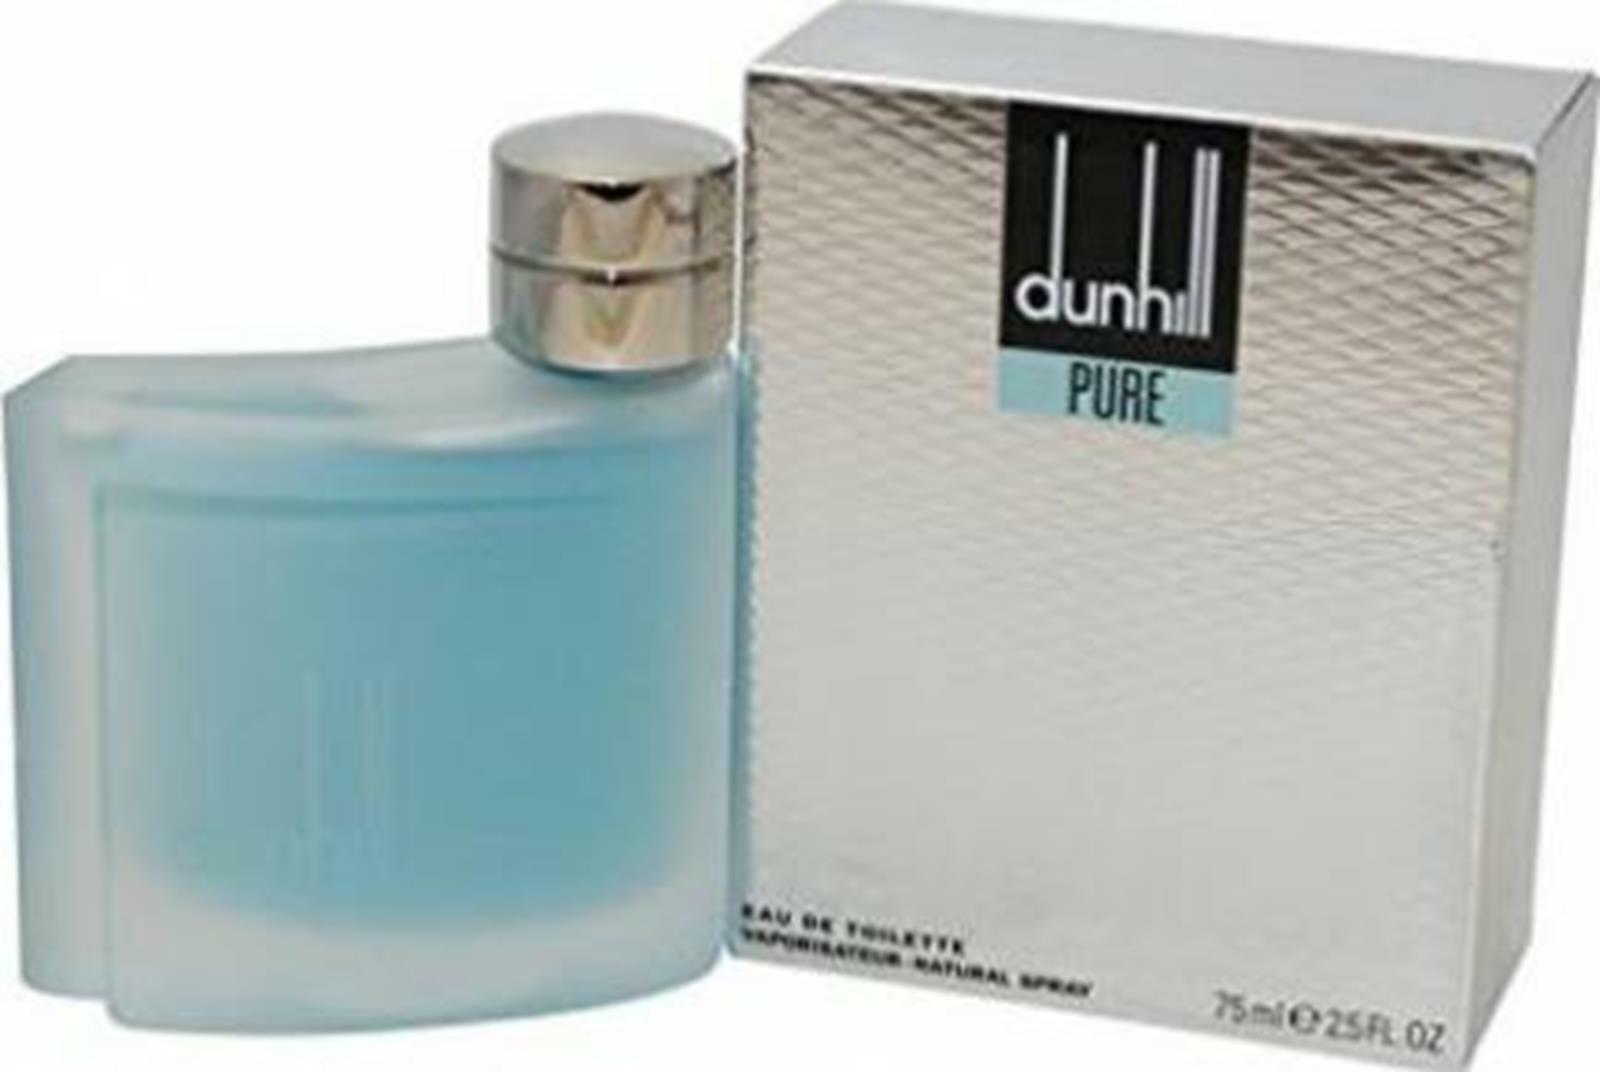 Dunhill Pure Eau De Toilette for Men 75ml at Ratans Online Shop - Perfumes Wholesale and Retailer Fragrance